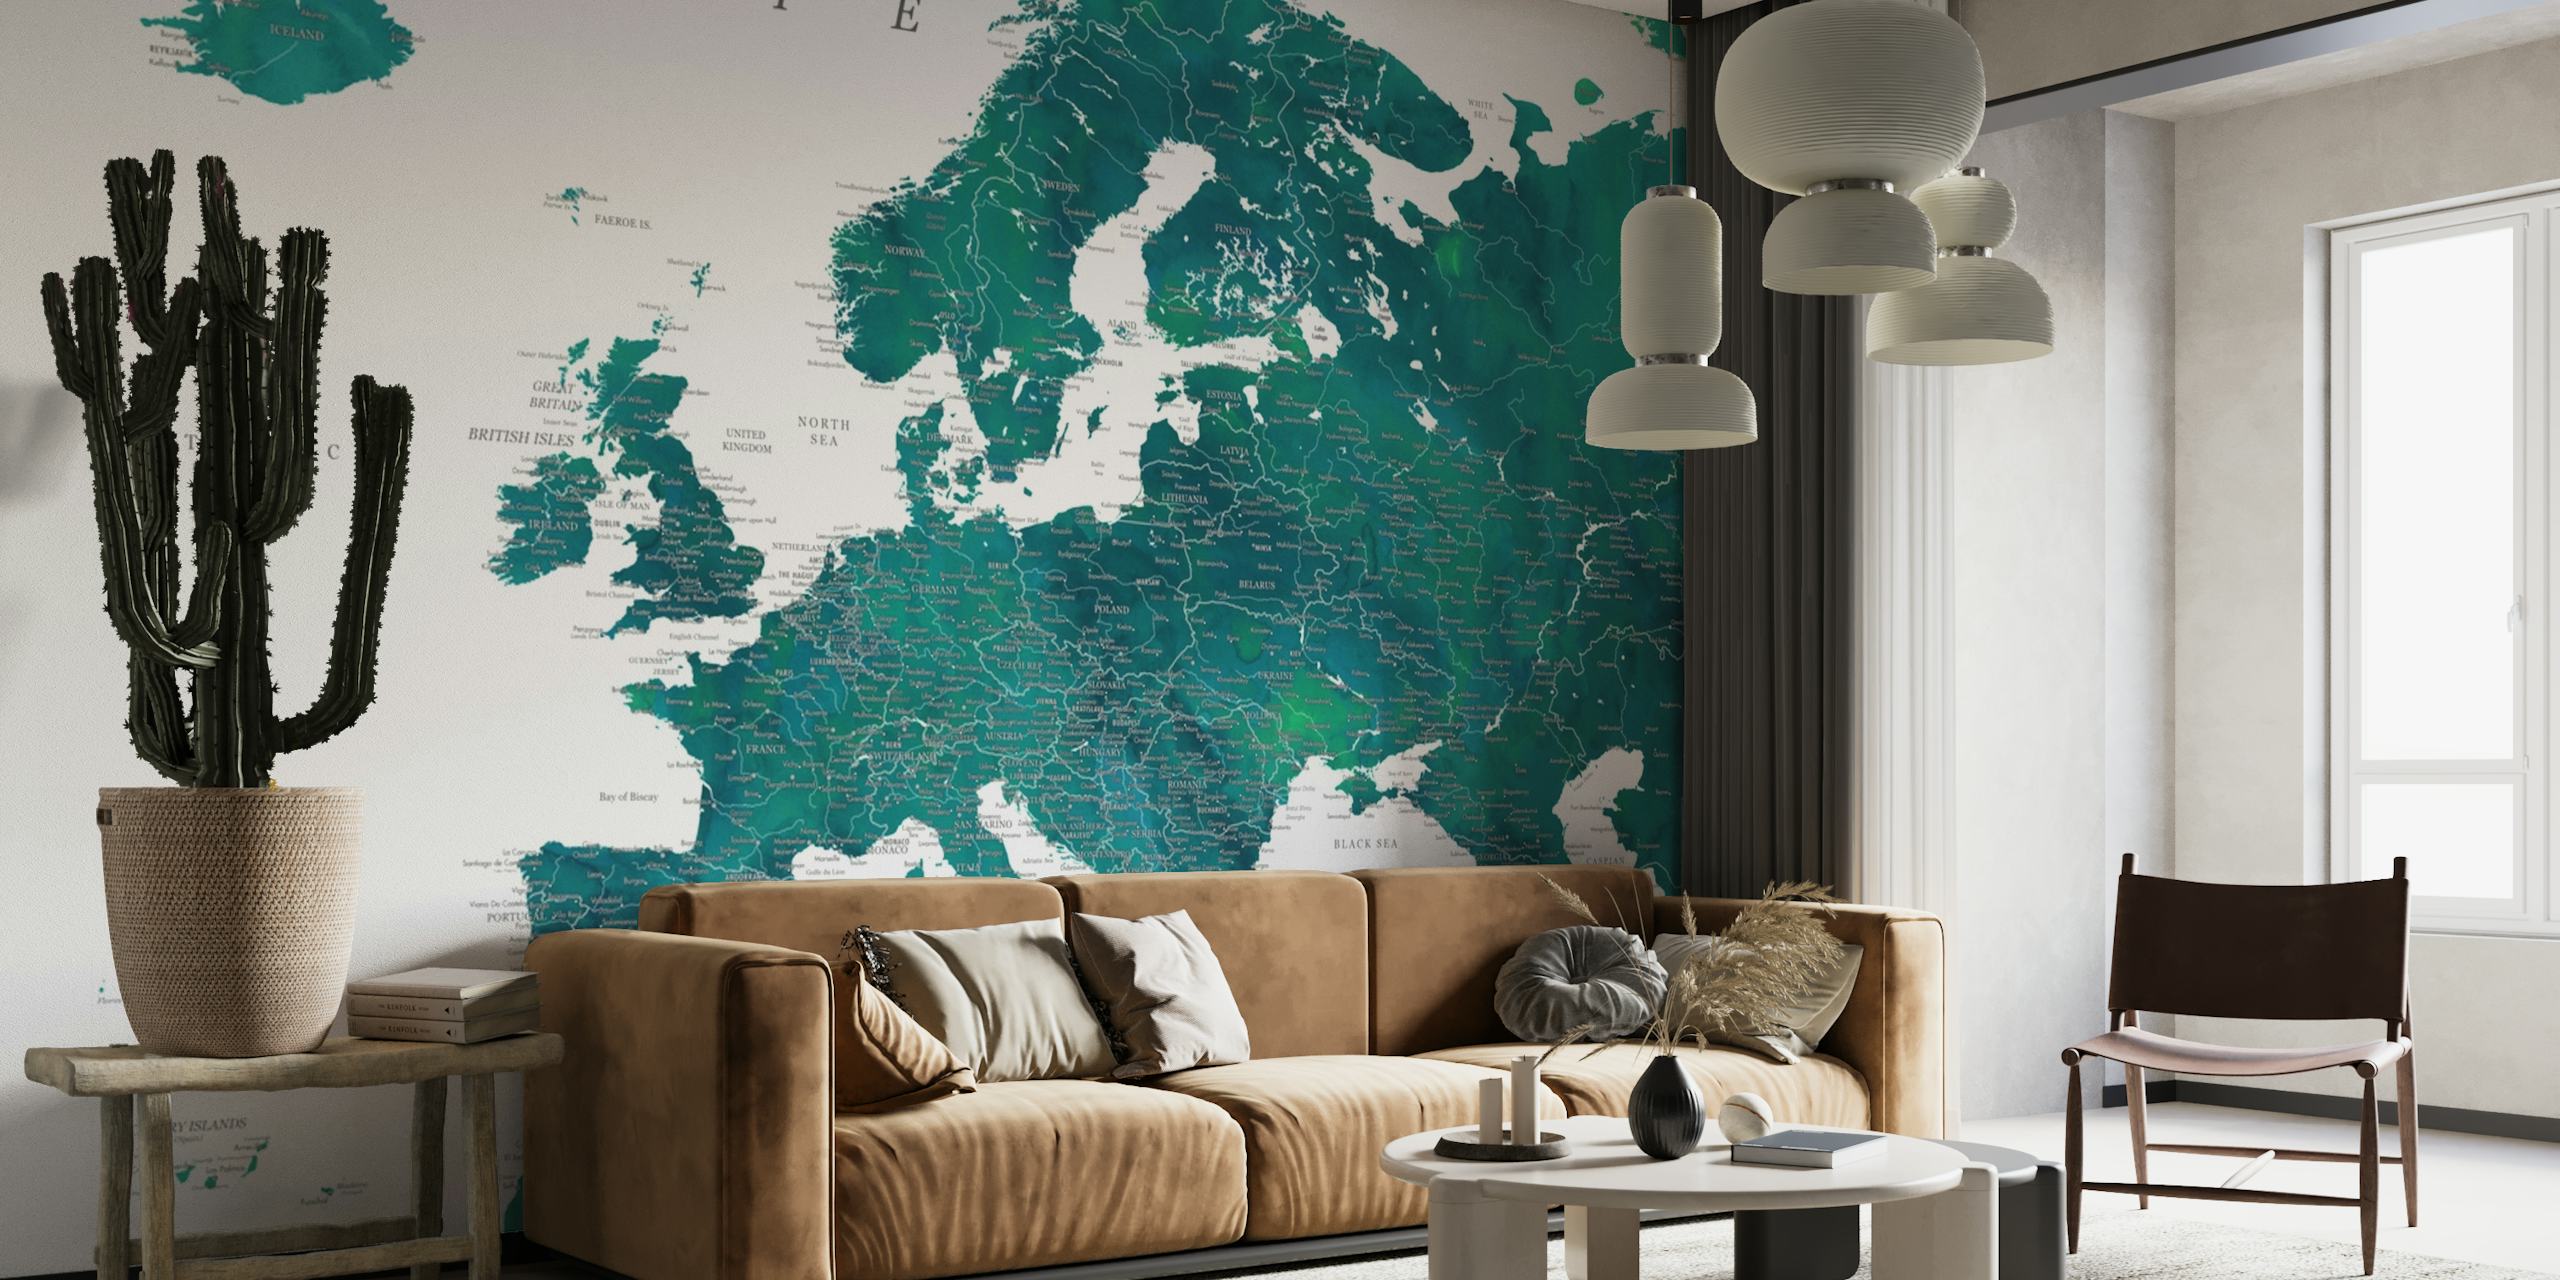 Szczegółowa fototapeta z mapą Europy Nyla przedstawiająca żywe kolory i szczegóły geograficzne